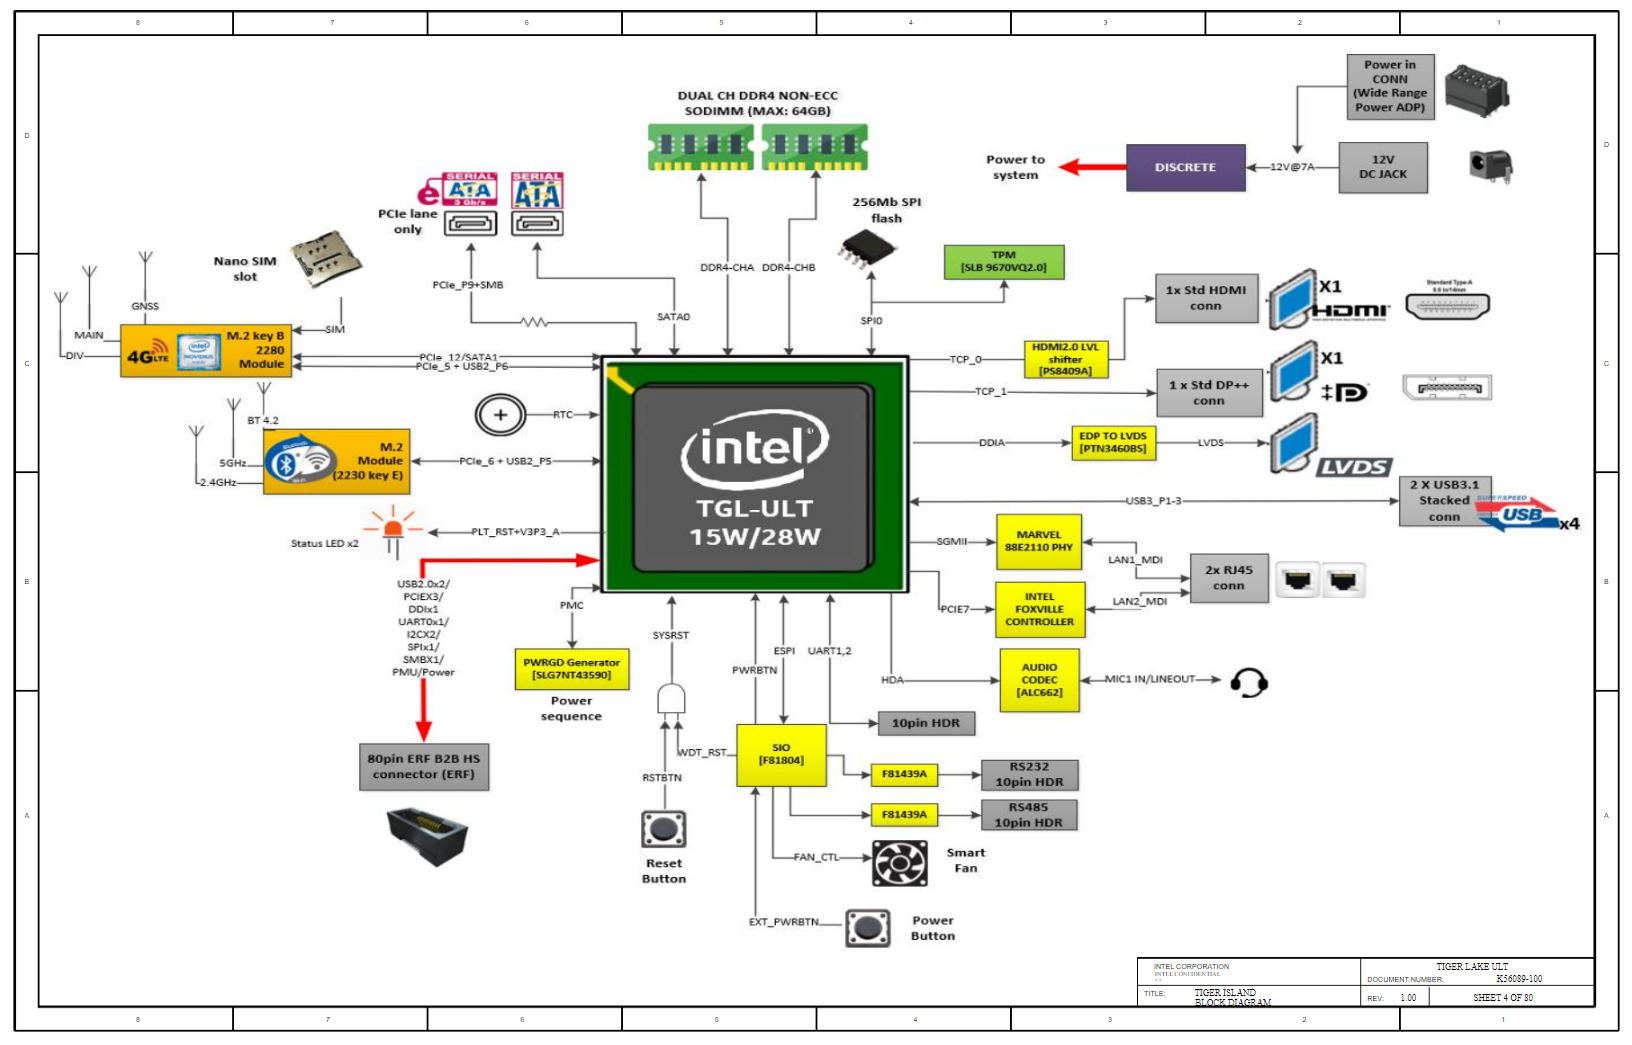 Анализ данных из последнего слива Intel - 29